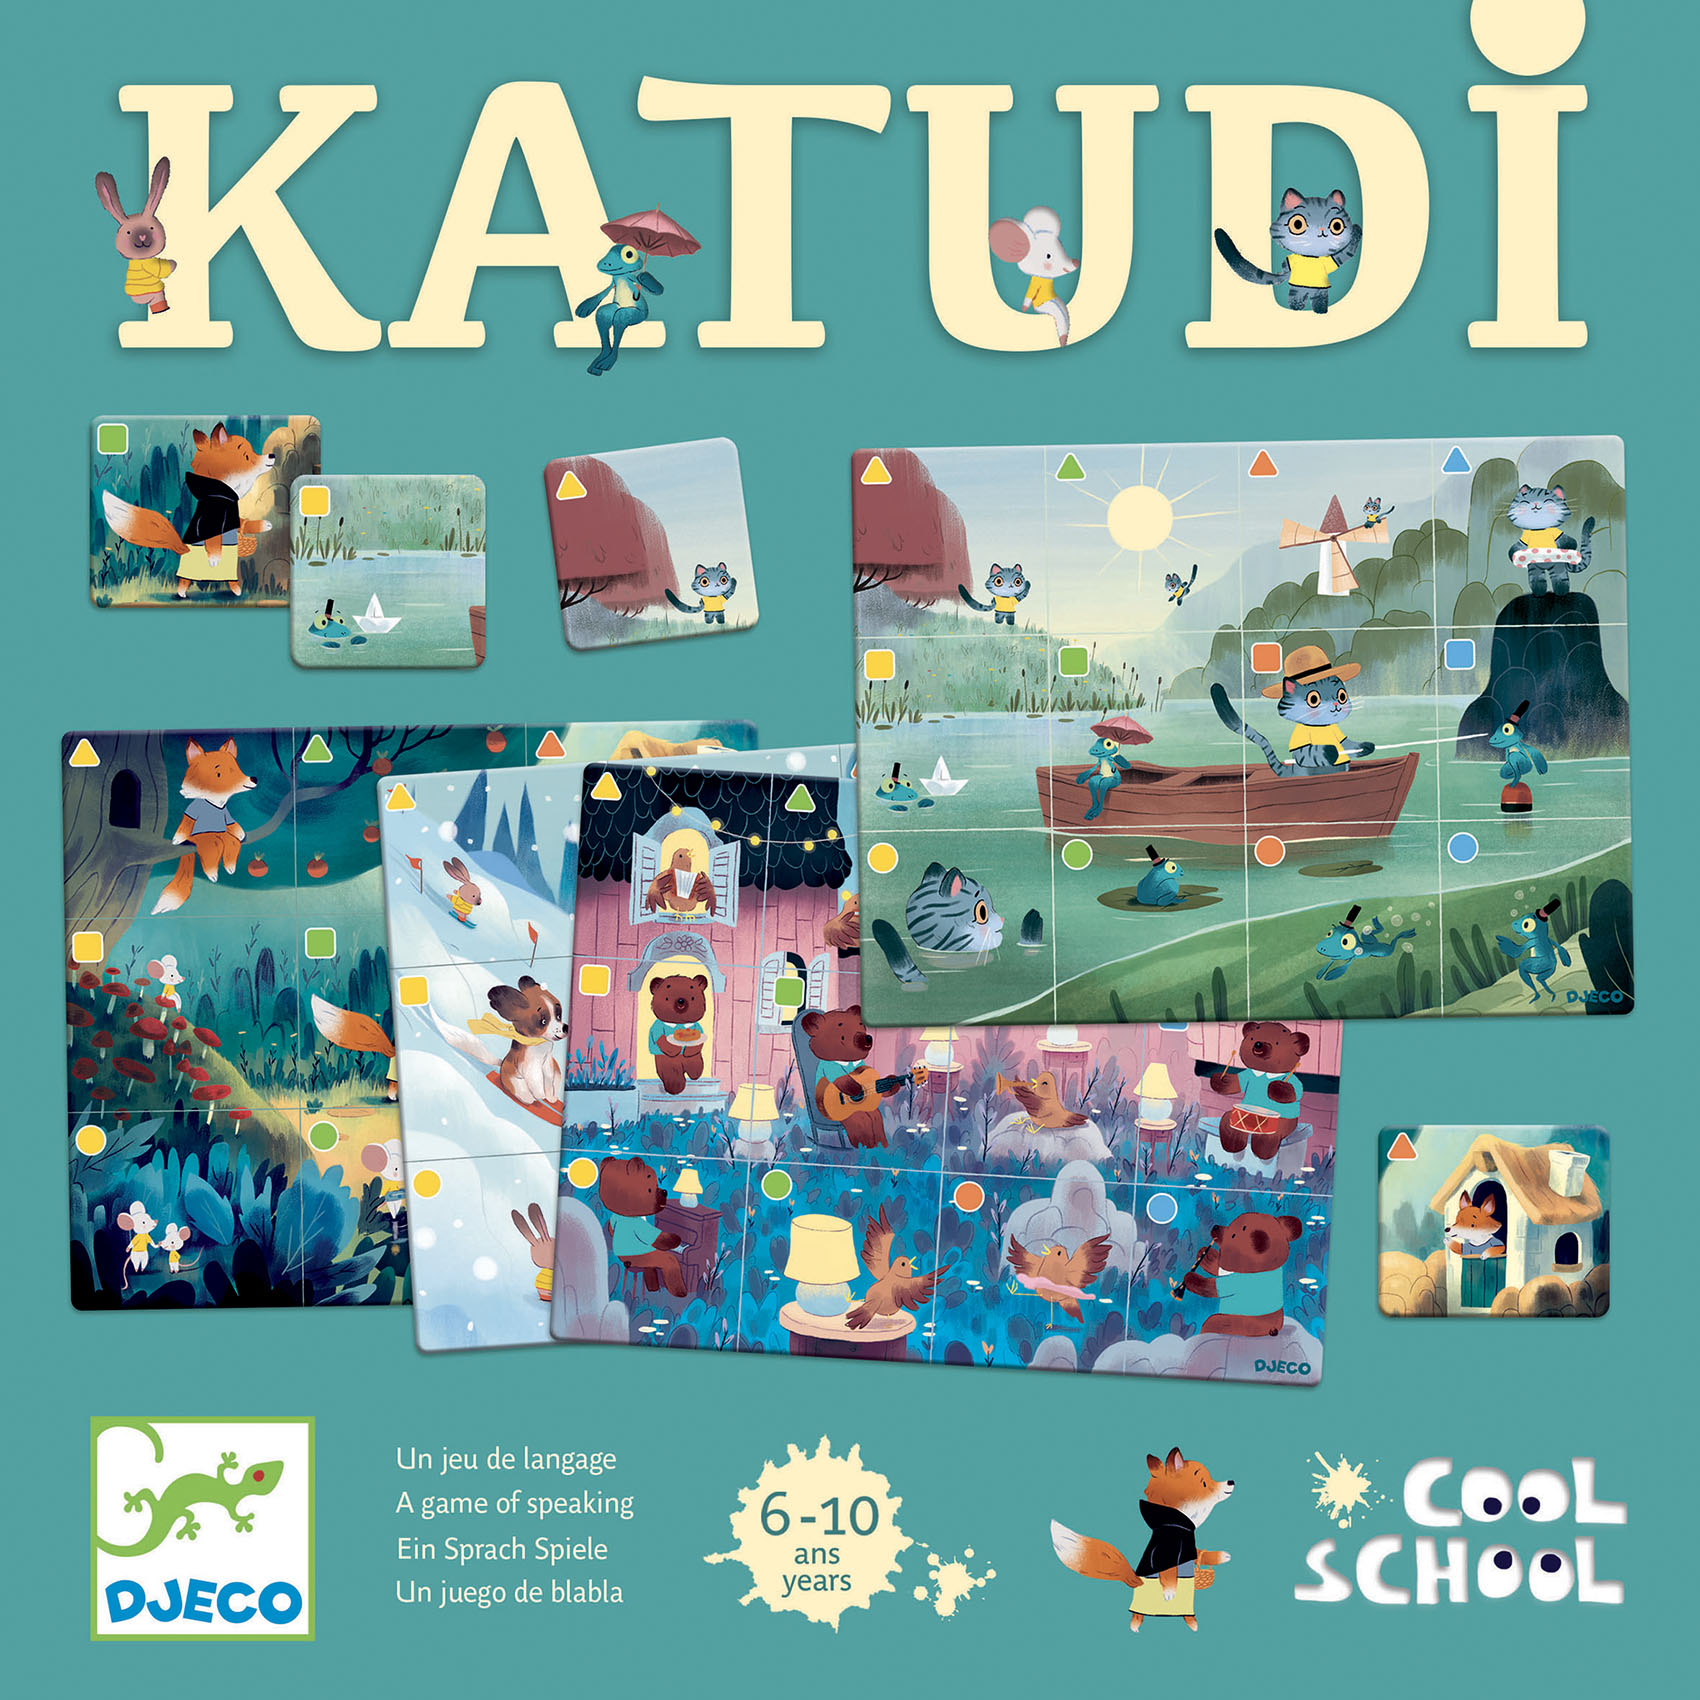 Katudi - Vackert spel om att hitta det som beskrivs